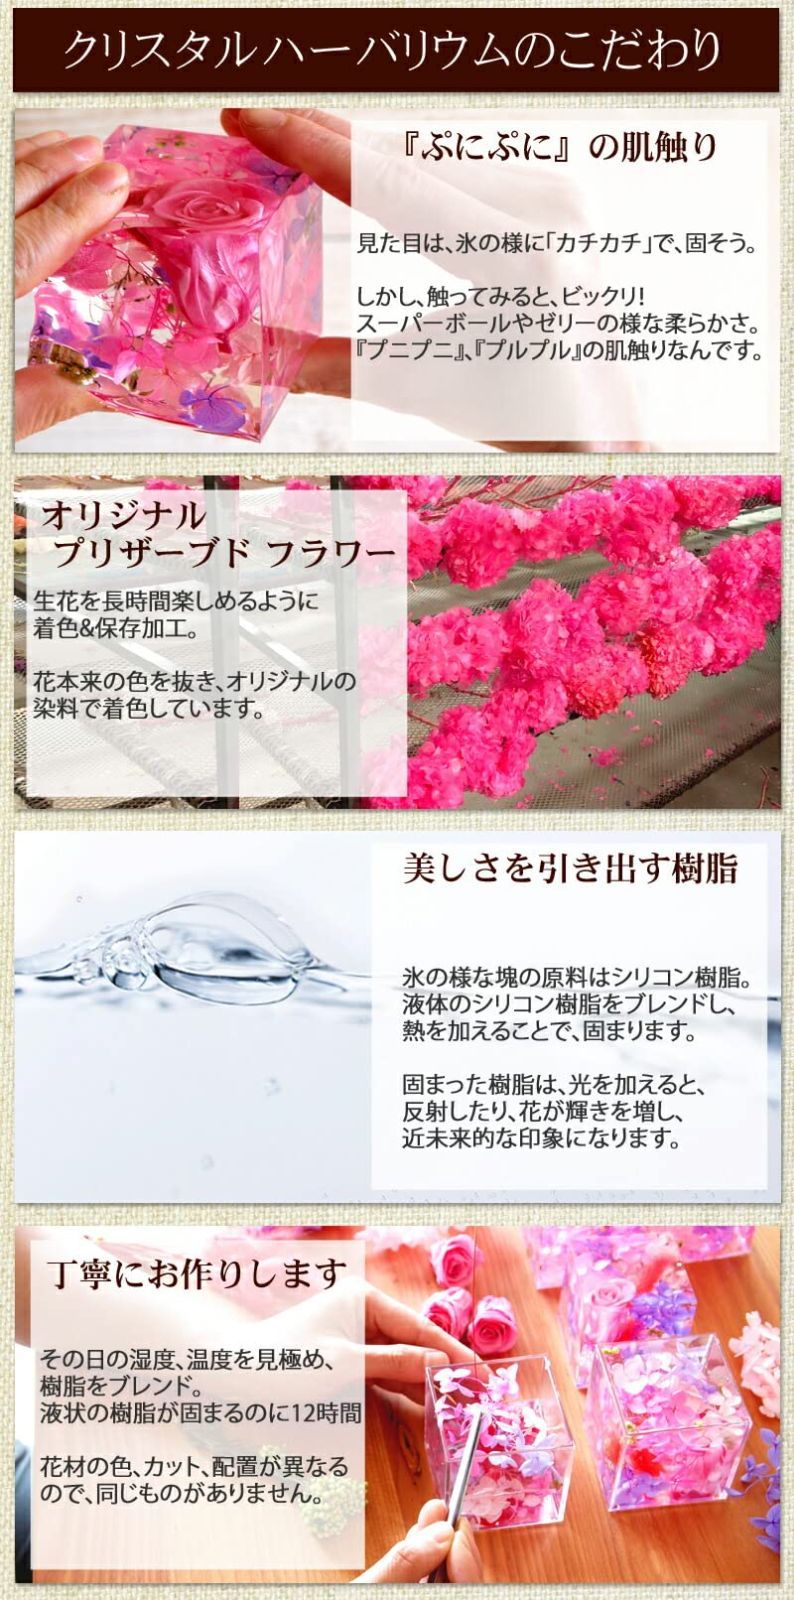 【色: さくら】ハーバリウム 桜 さくら サクラ 固める 固まる クリスタルハー